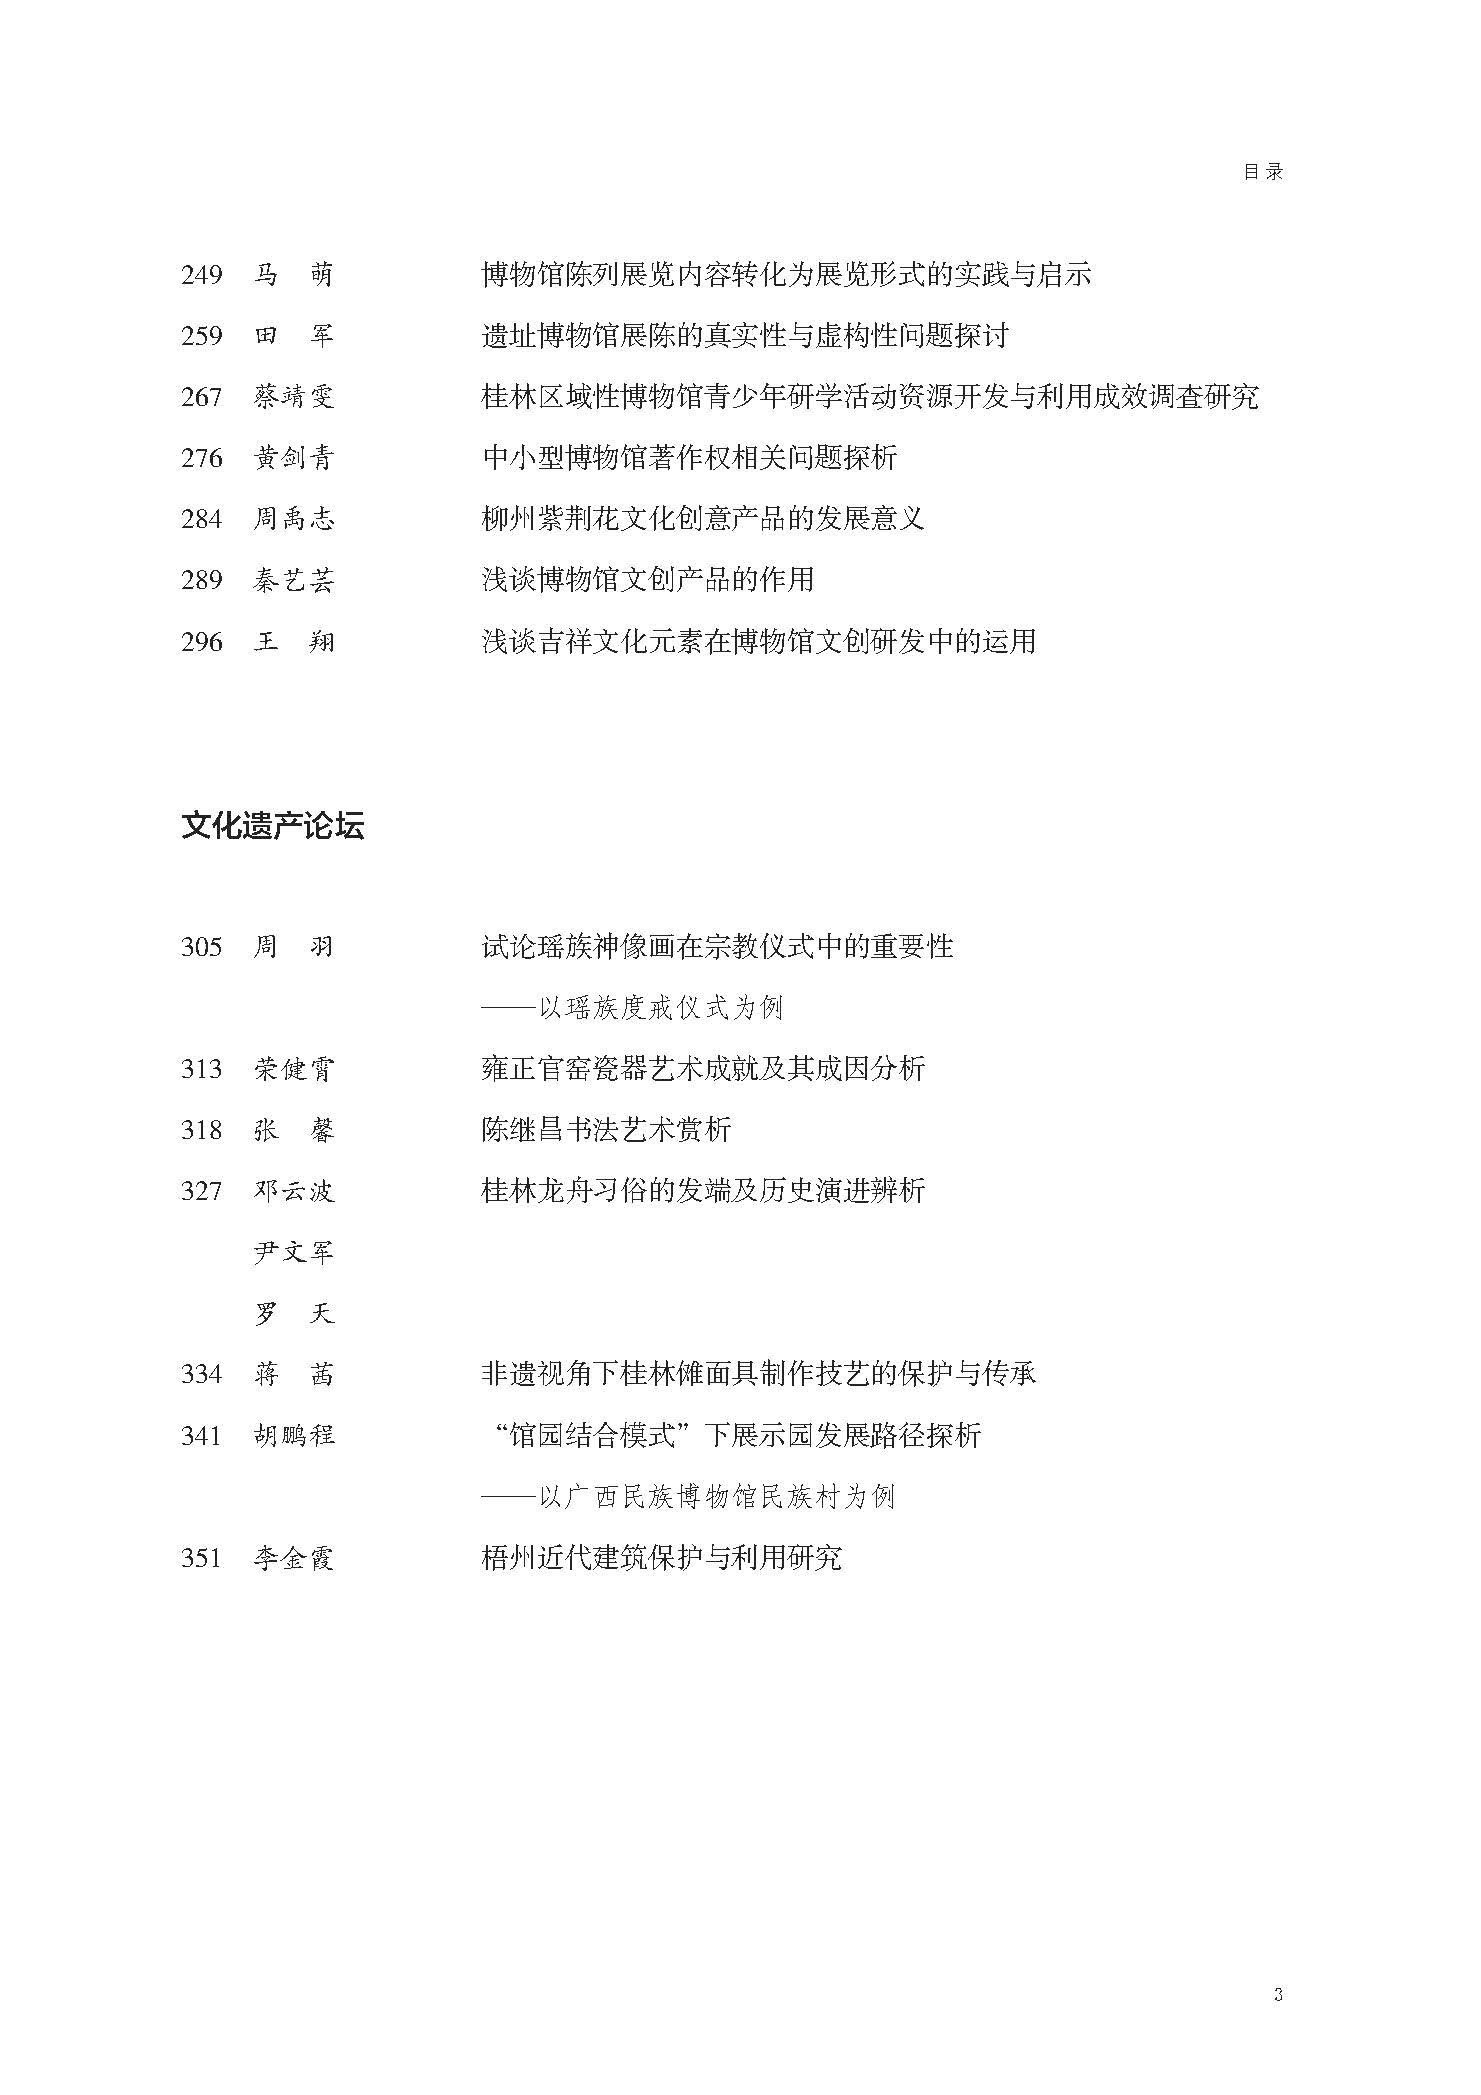 页面提取自－桂林博物馆文集（第10辑）（最终版）.pdf_页面_4.jpg